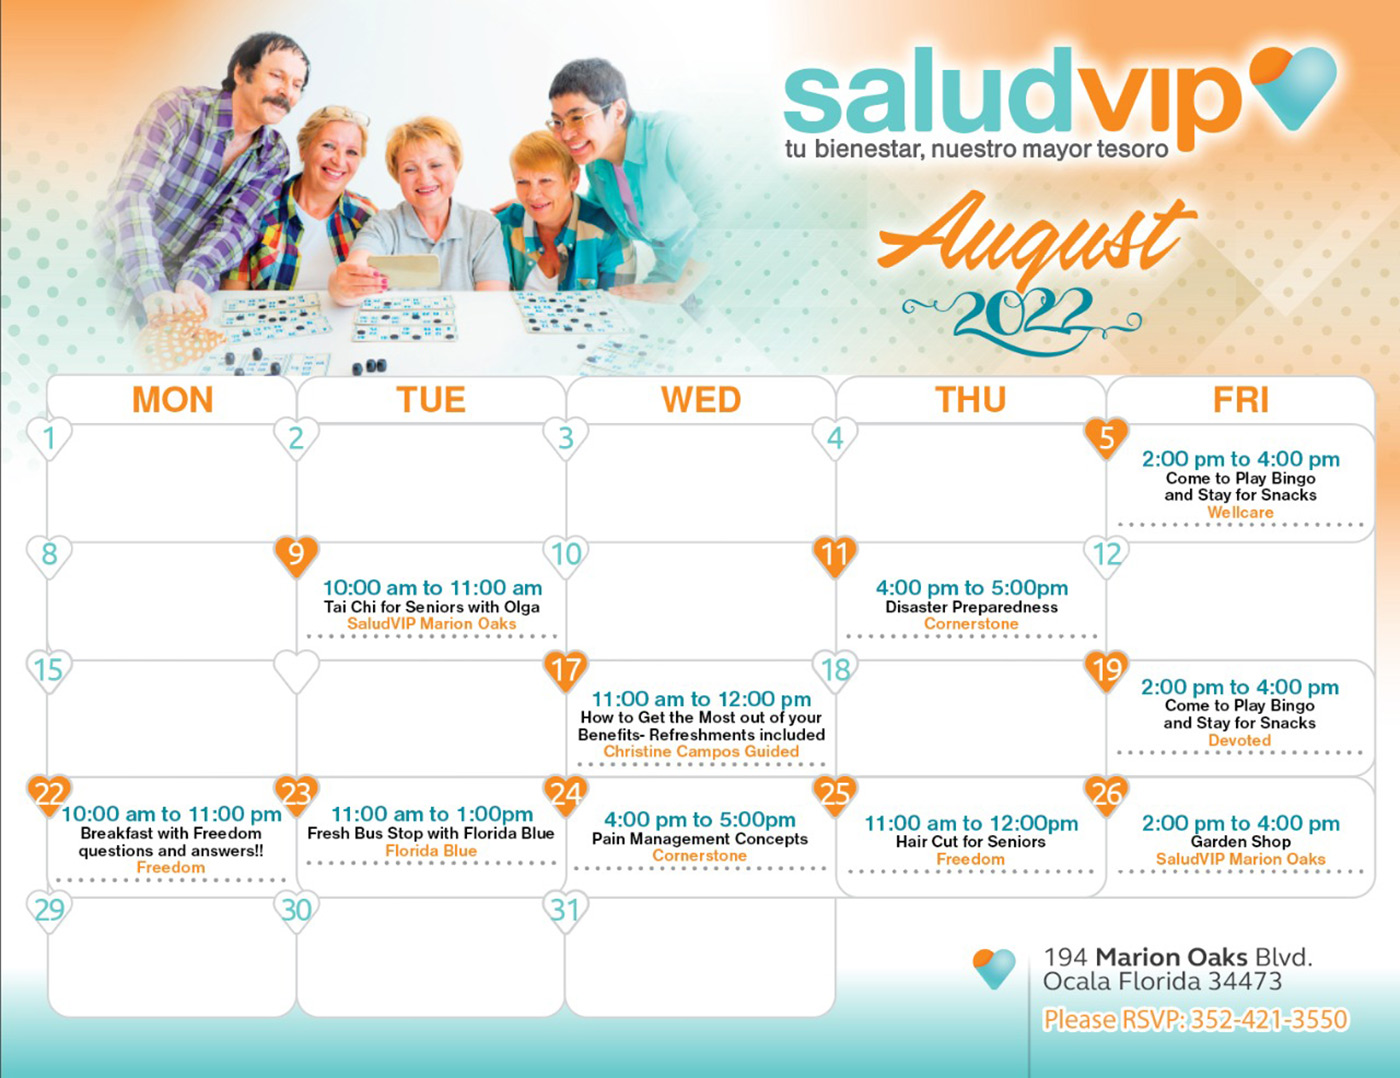 Patients Activities August 2022 - SaludVIP Marion Oaks